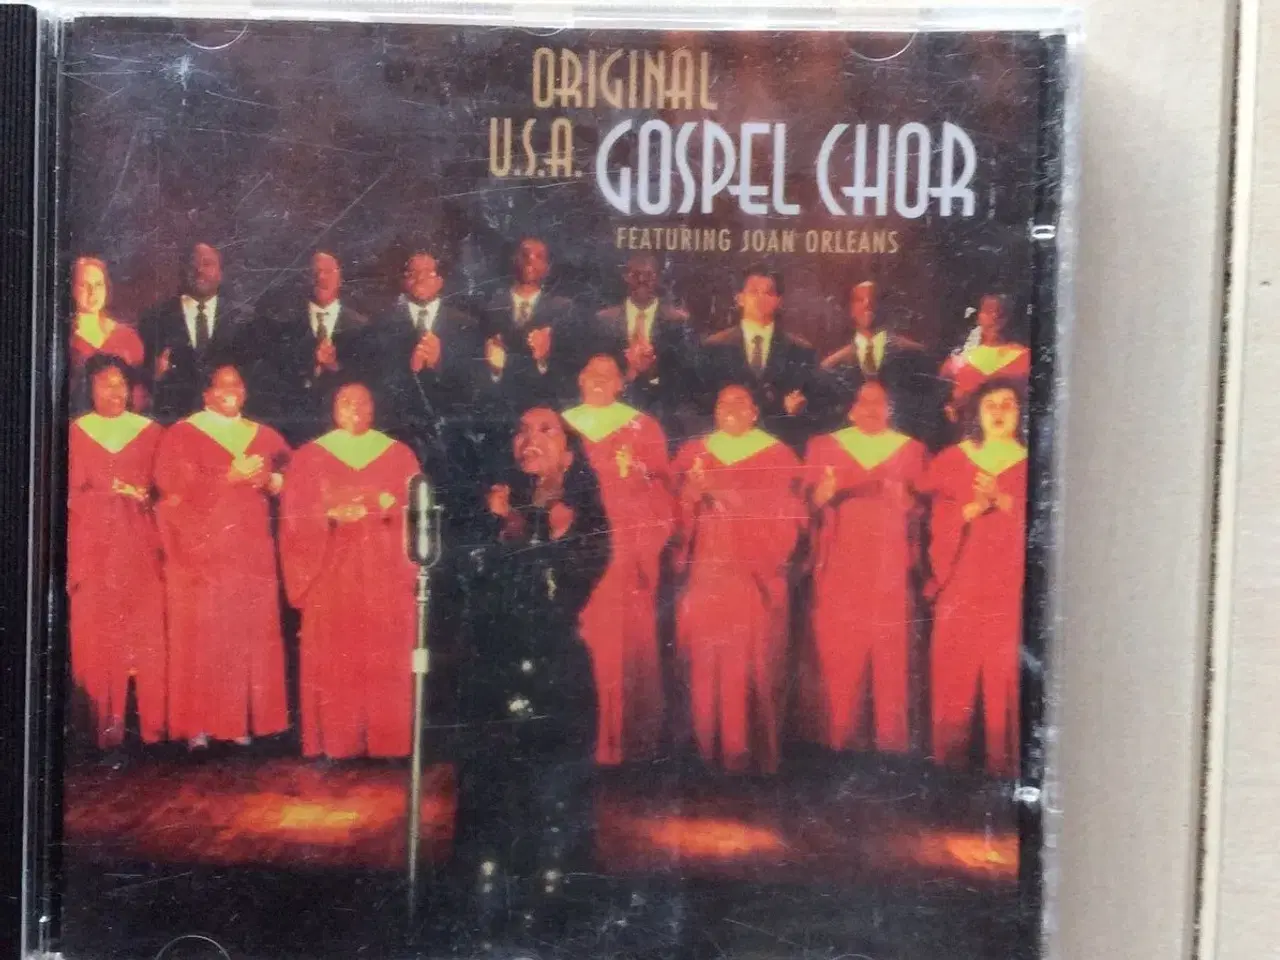 Billede 1 - Original U.S.A. Gospel chor